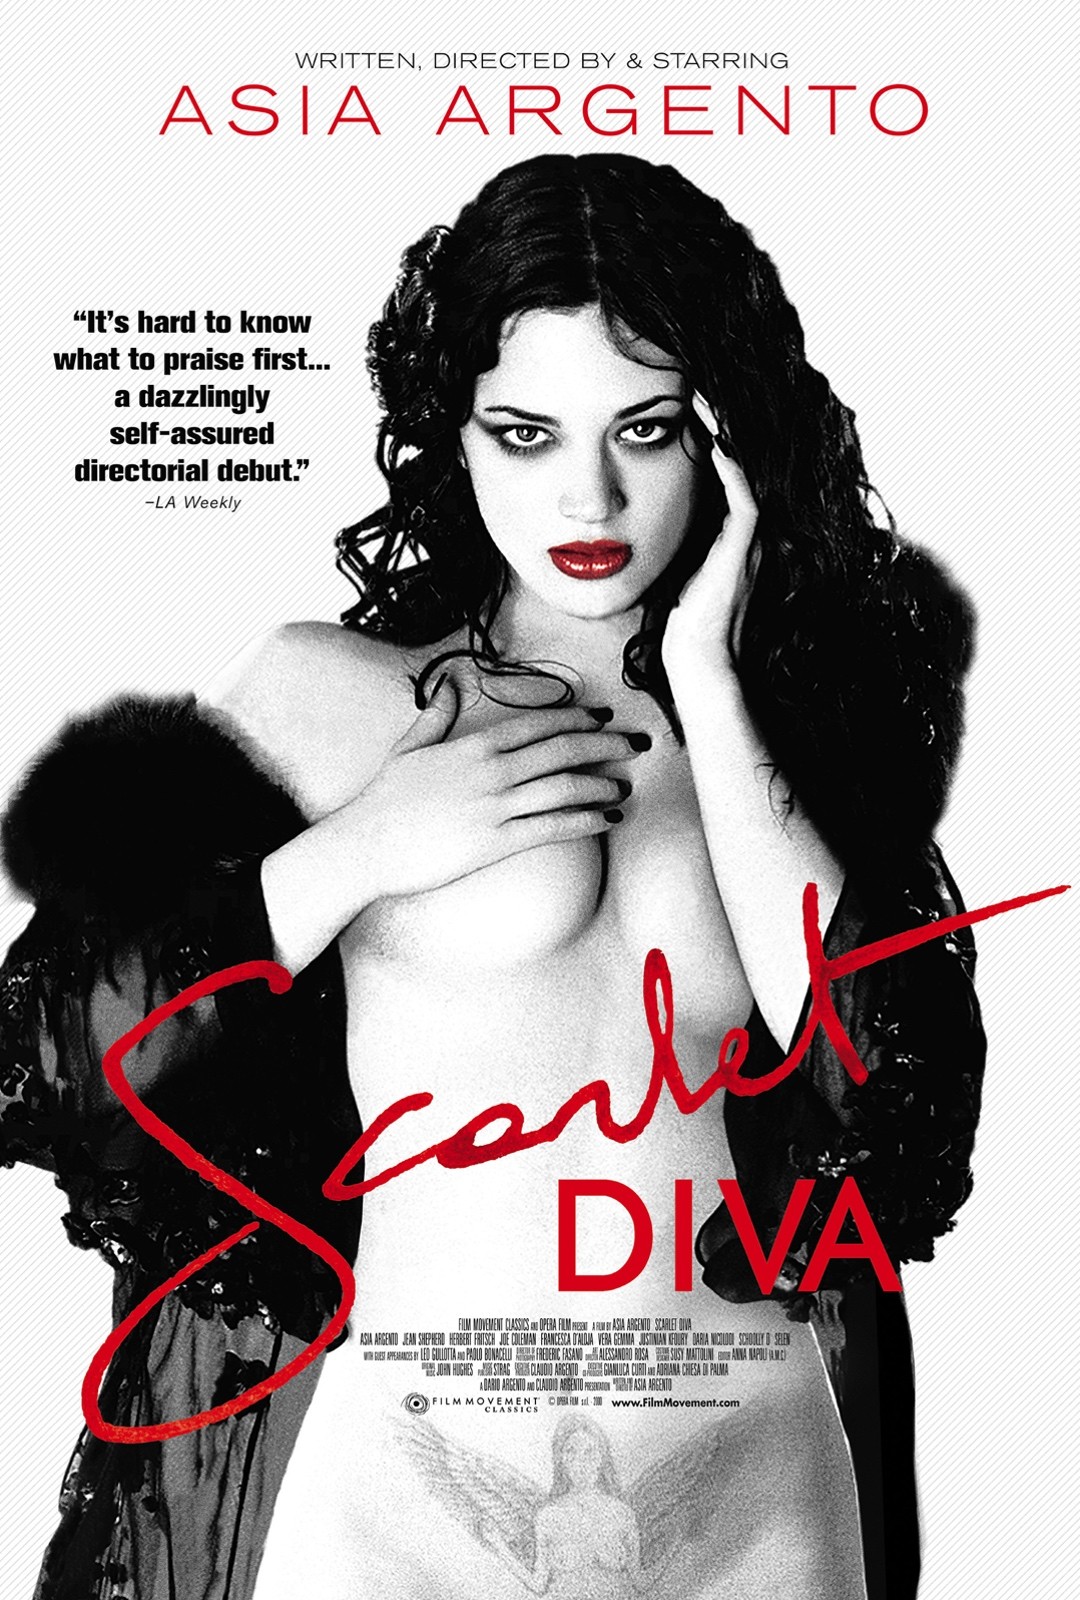 Scarlet diva movie